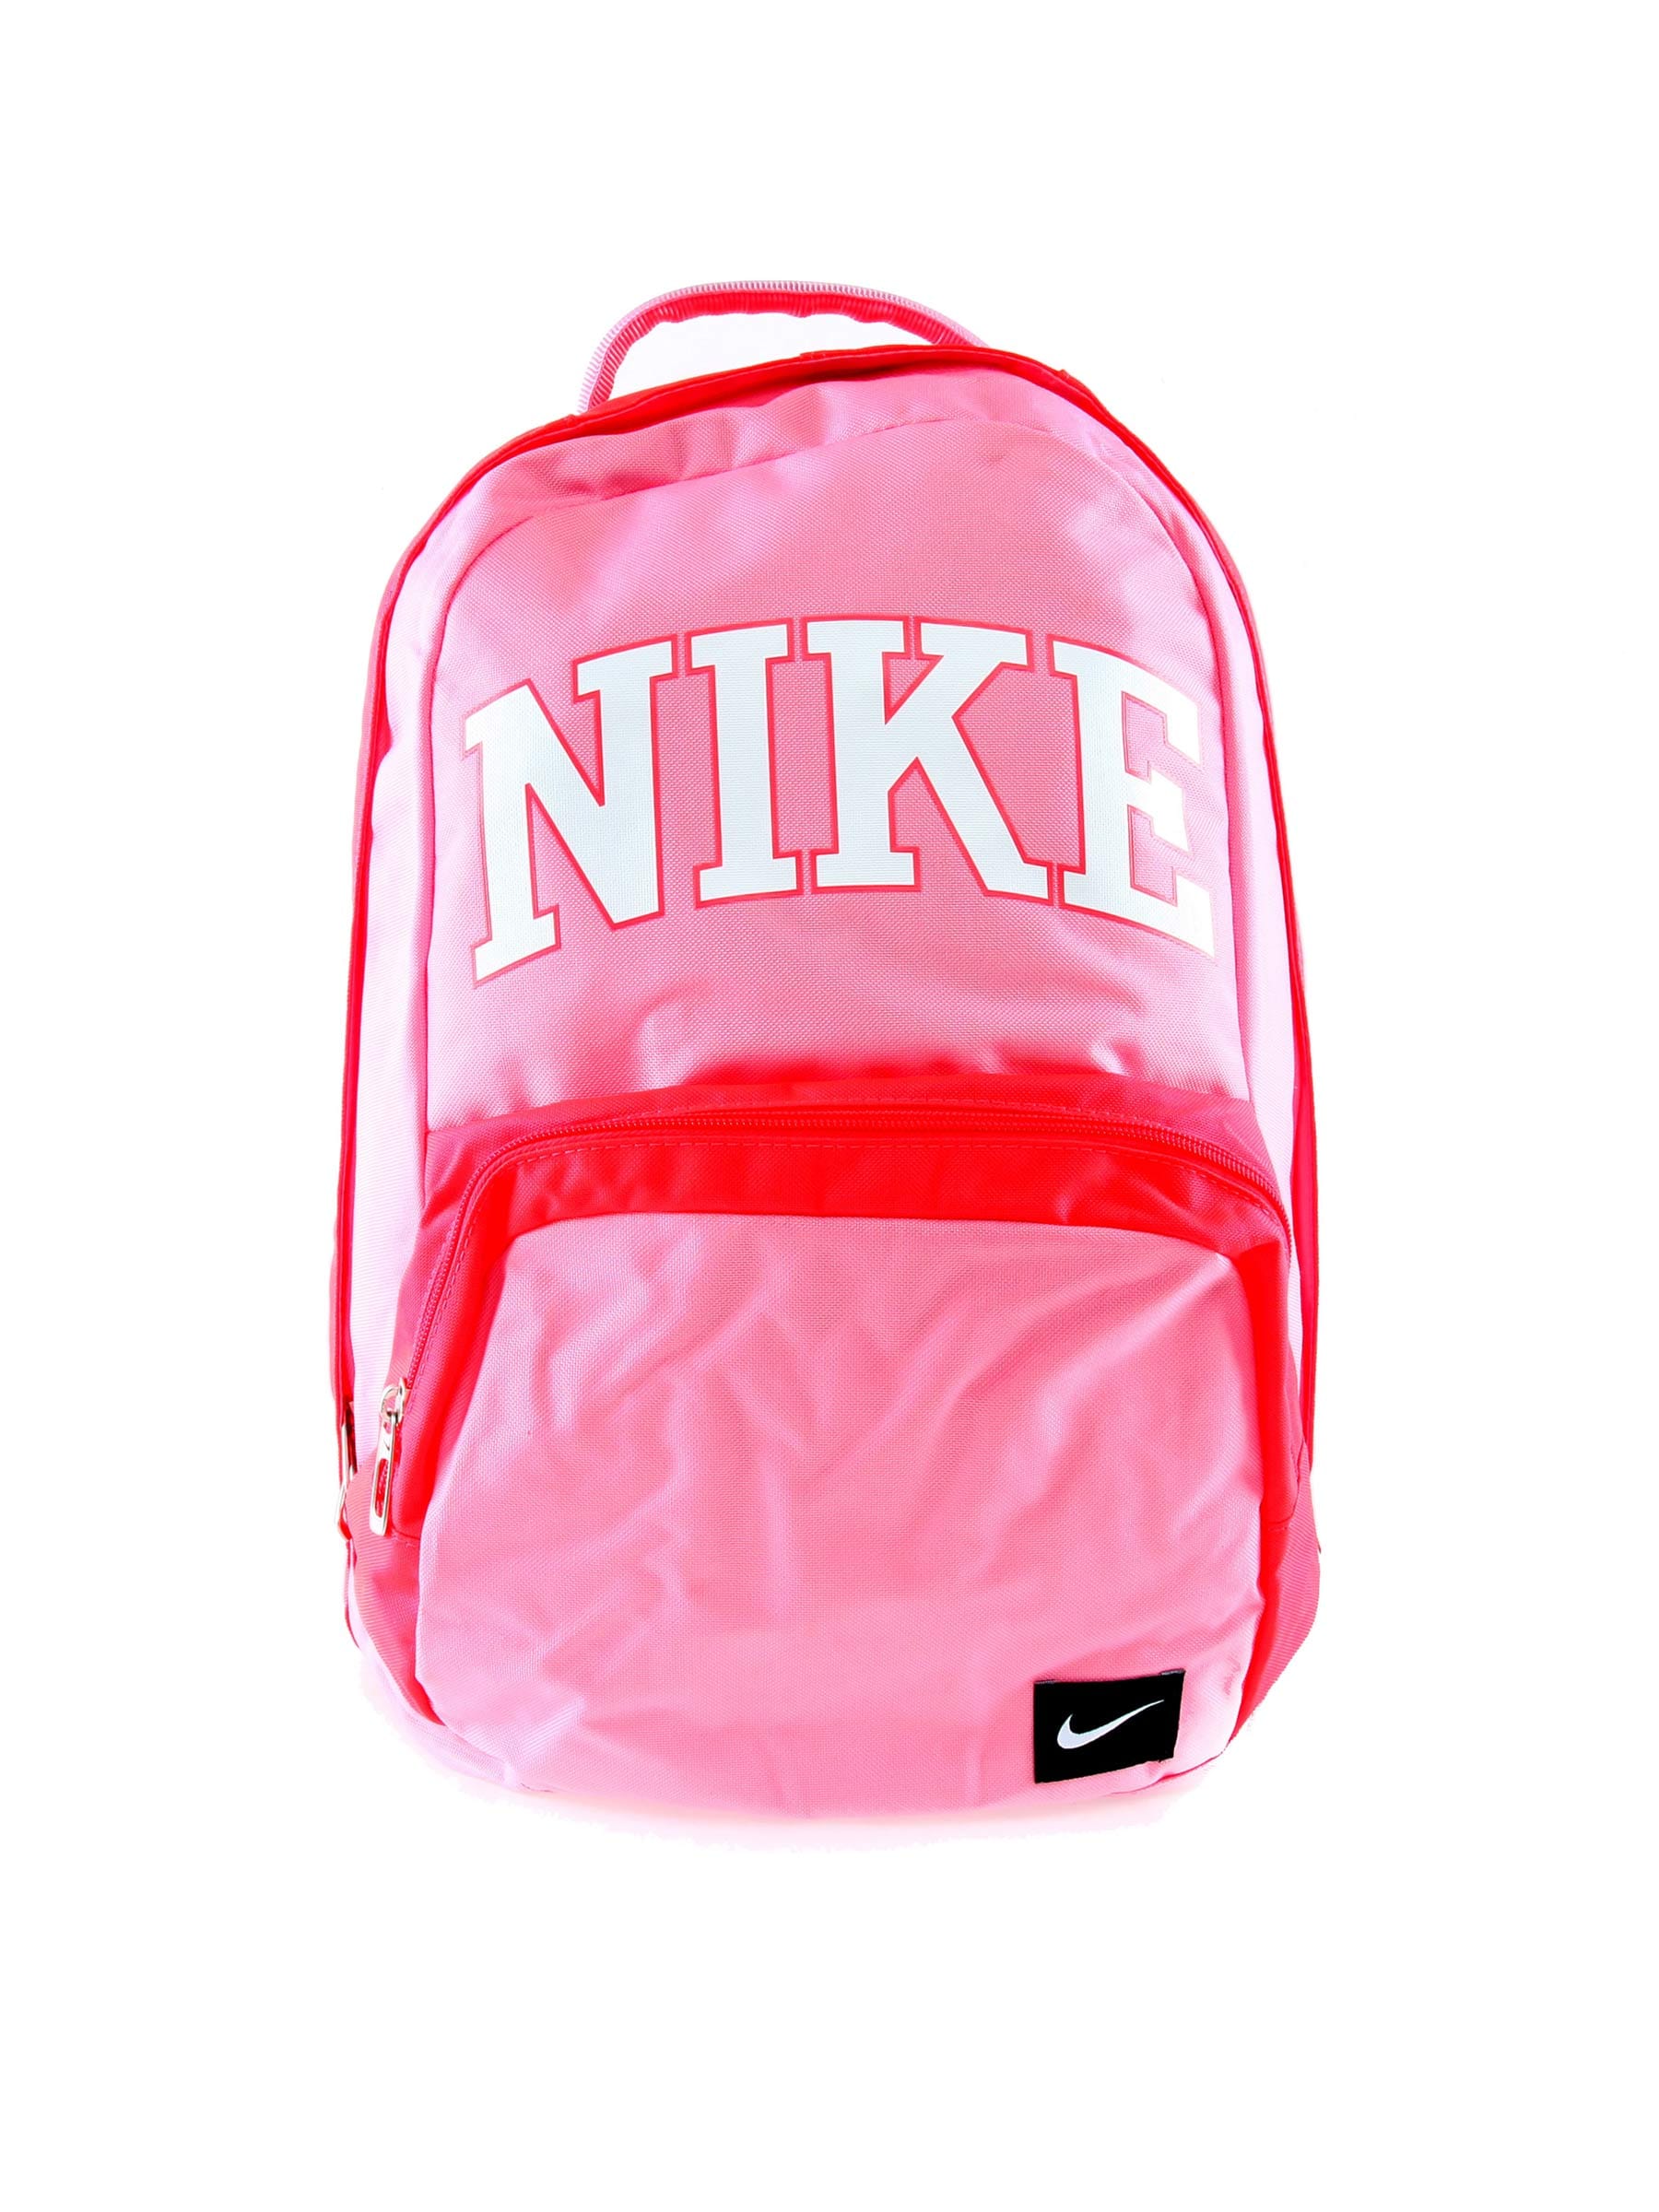 Nike Unisex Tetron Pink Backpack